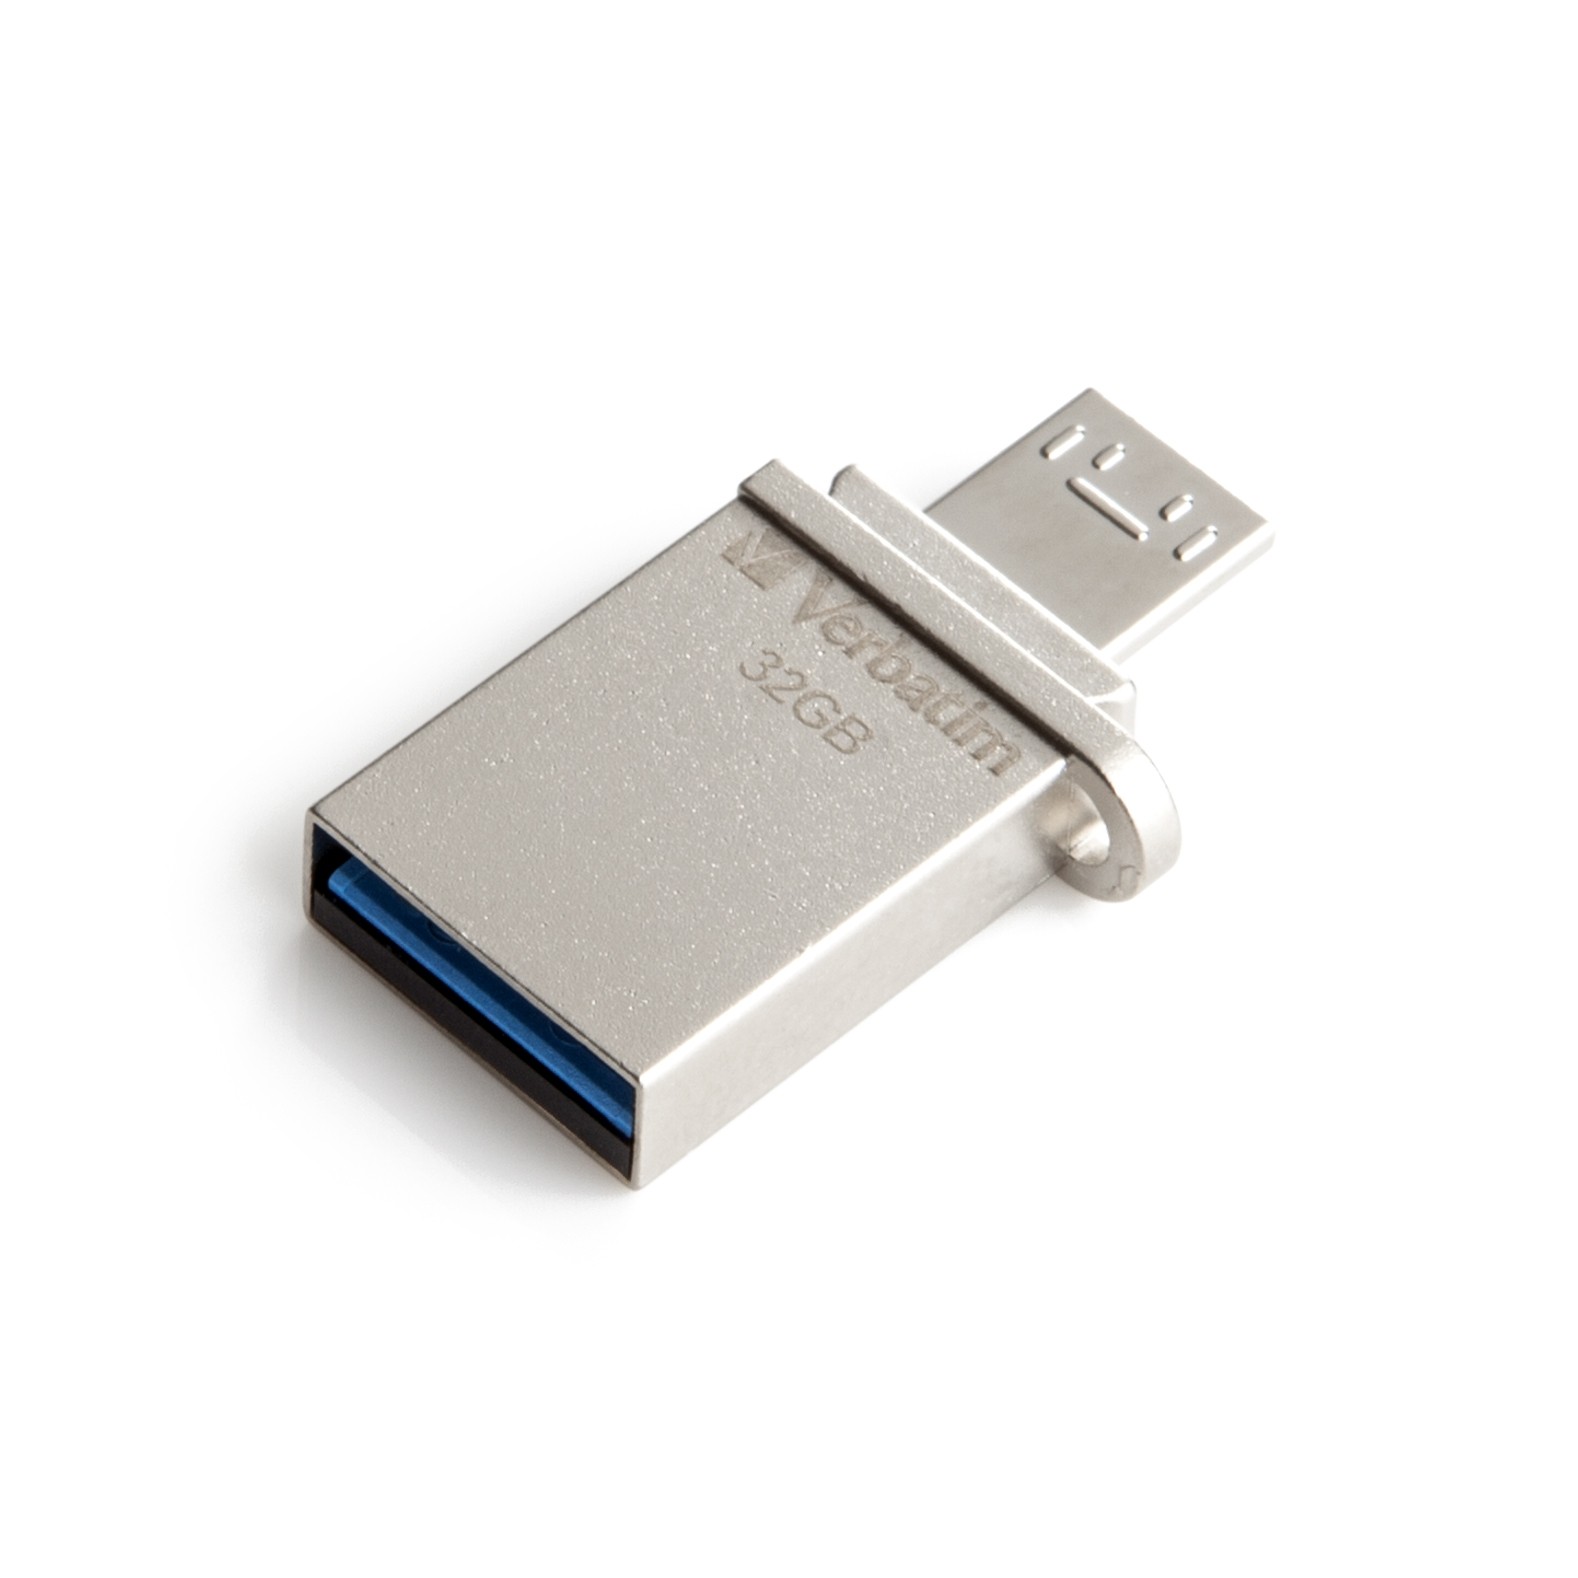 USB Verbatim Store'n' Go OTG Micro USB 3.0 32GB - Hàng chính hãng